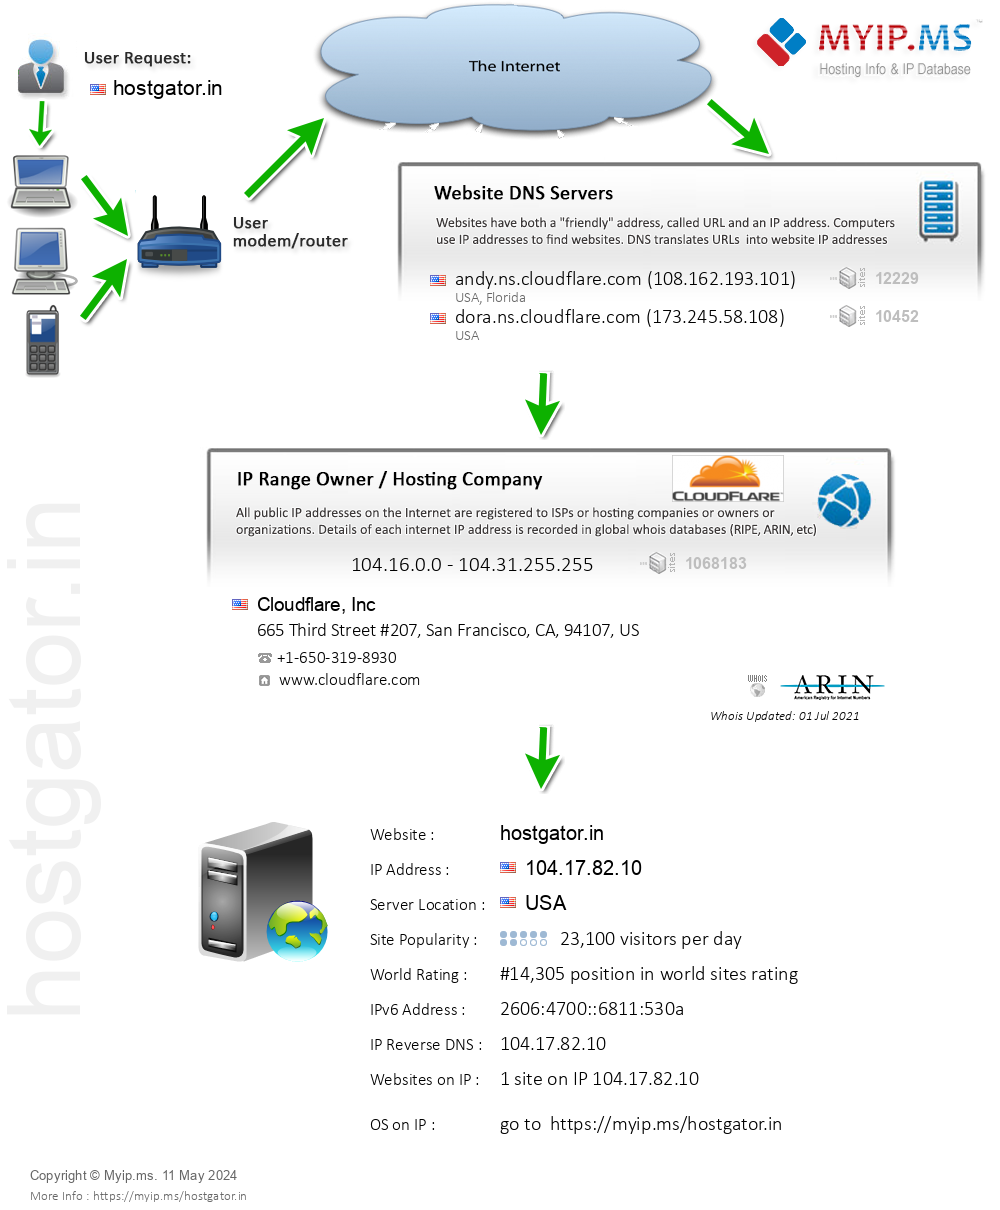 Hostgator.in - Website Hosting Visual IP Diagram